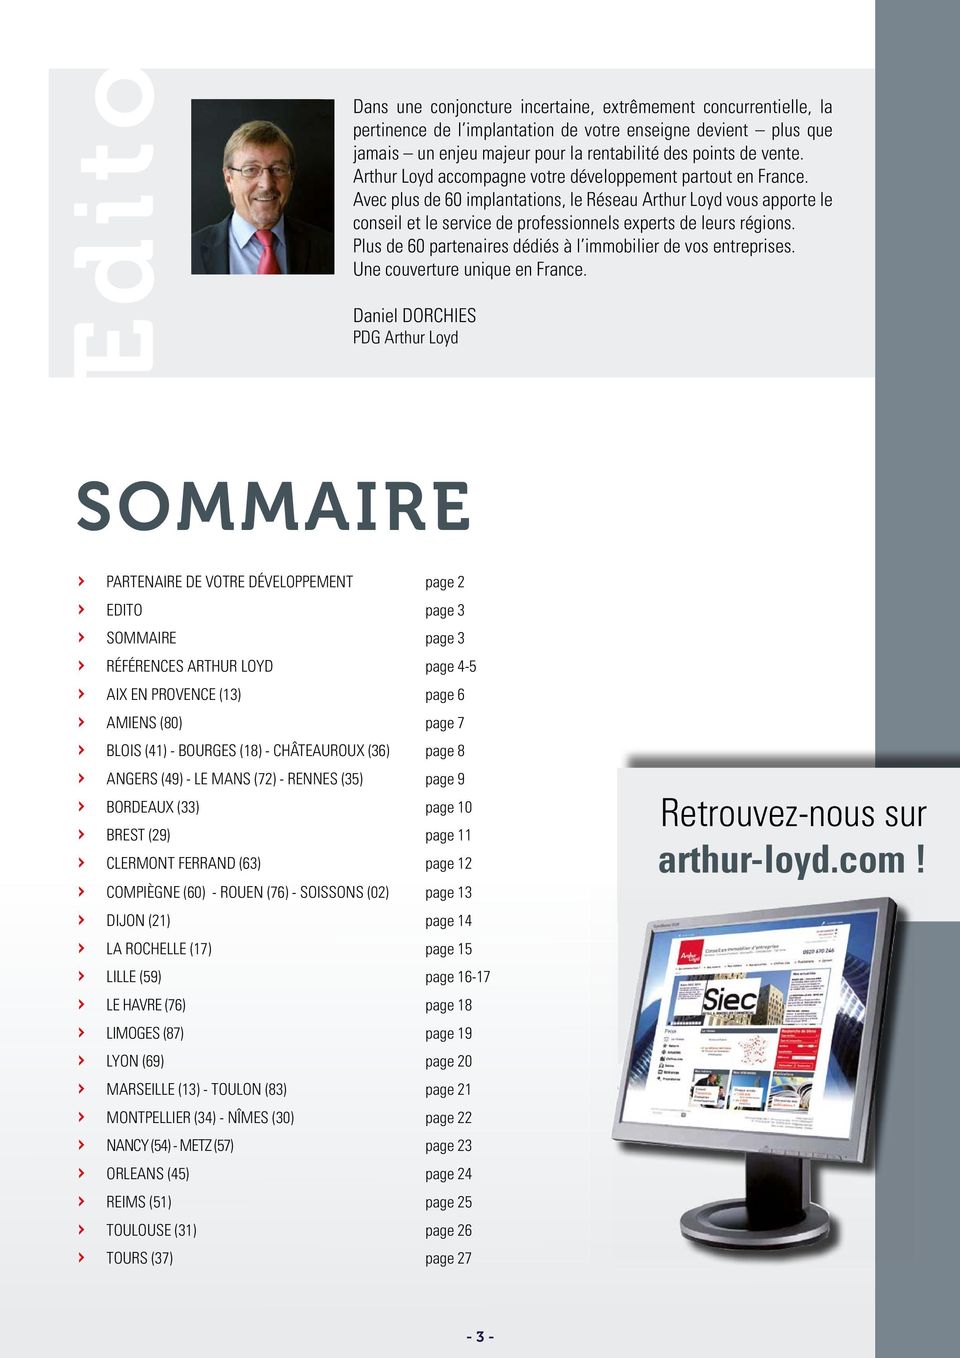 Plus de 60 partenaires dédiés à l immobilier de vos entreprises. Une couverture unique en France.